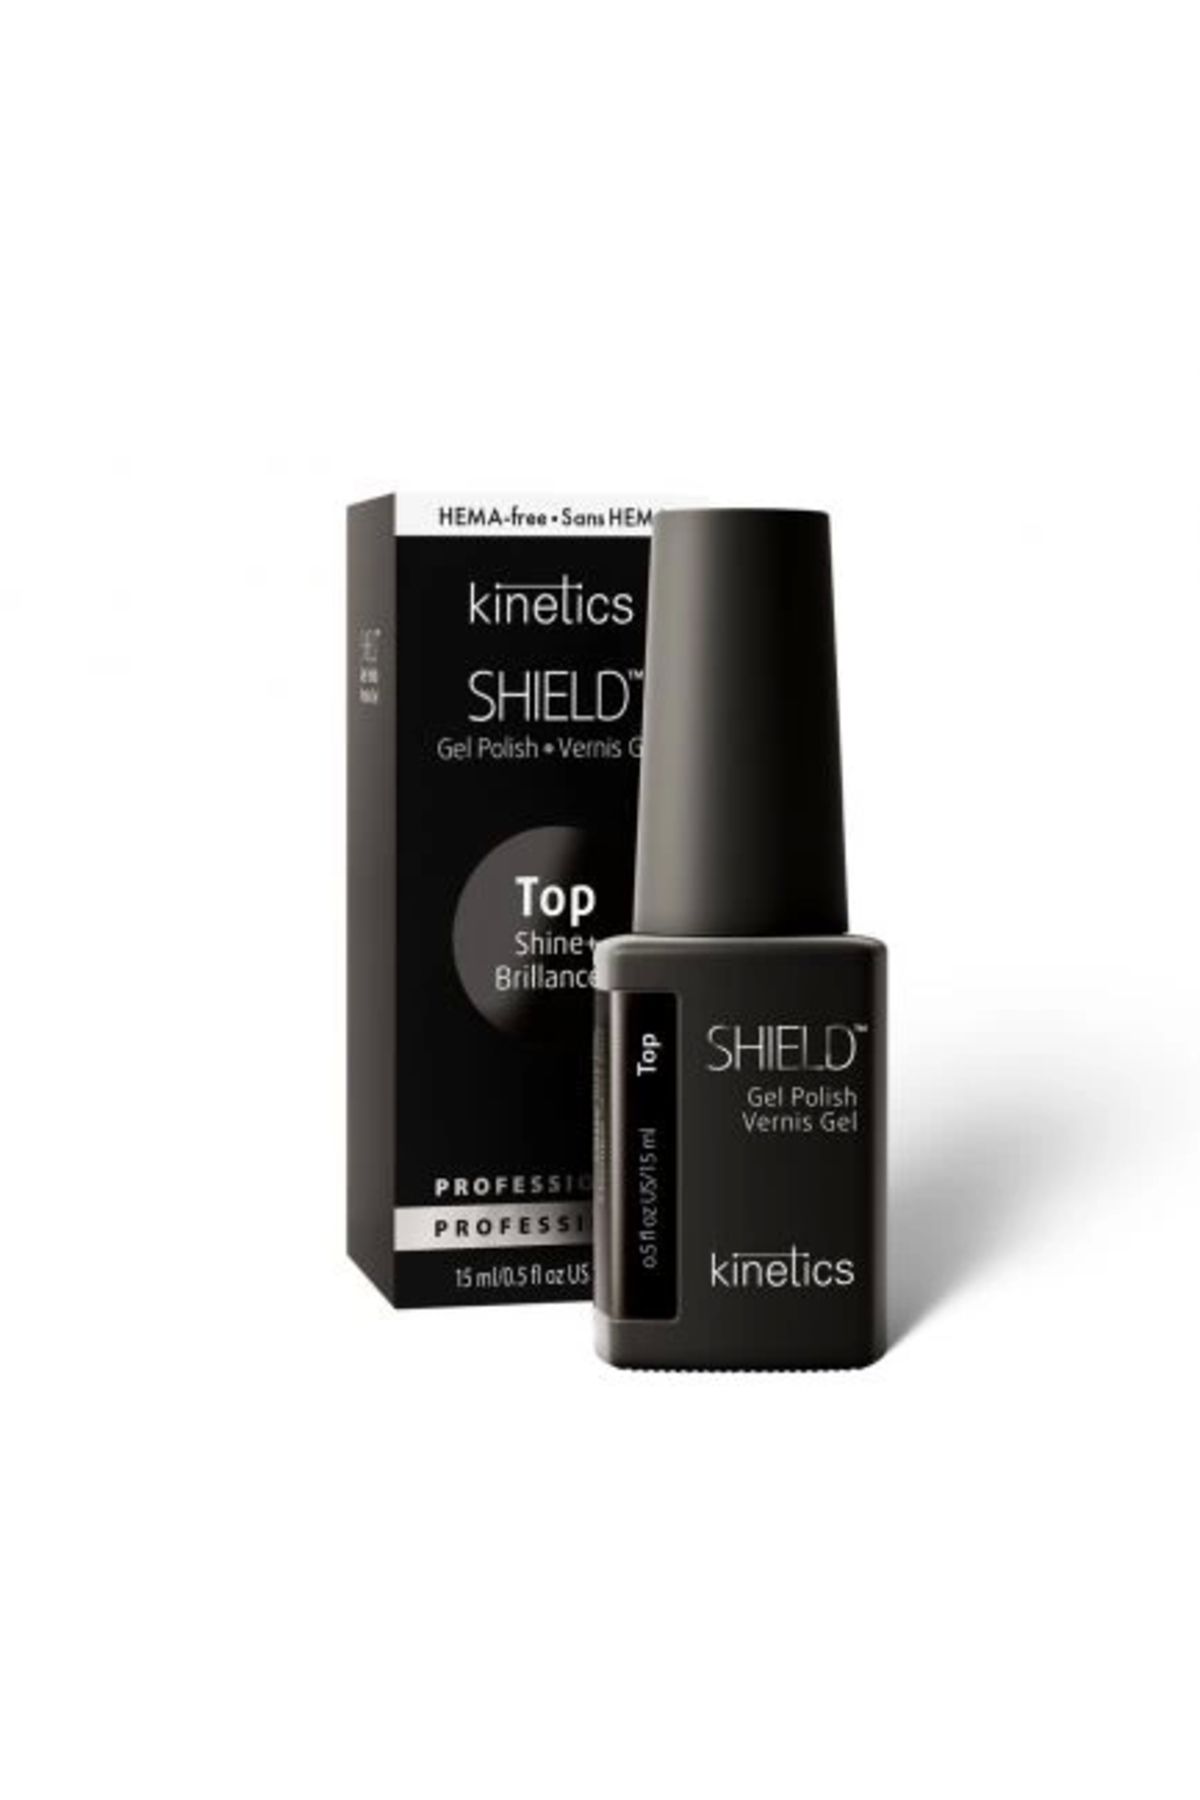 kinetics Shield Hema Free Shine Top Coat, 15ml